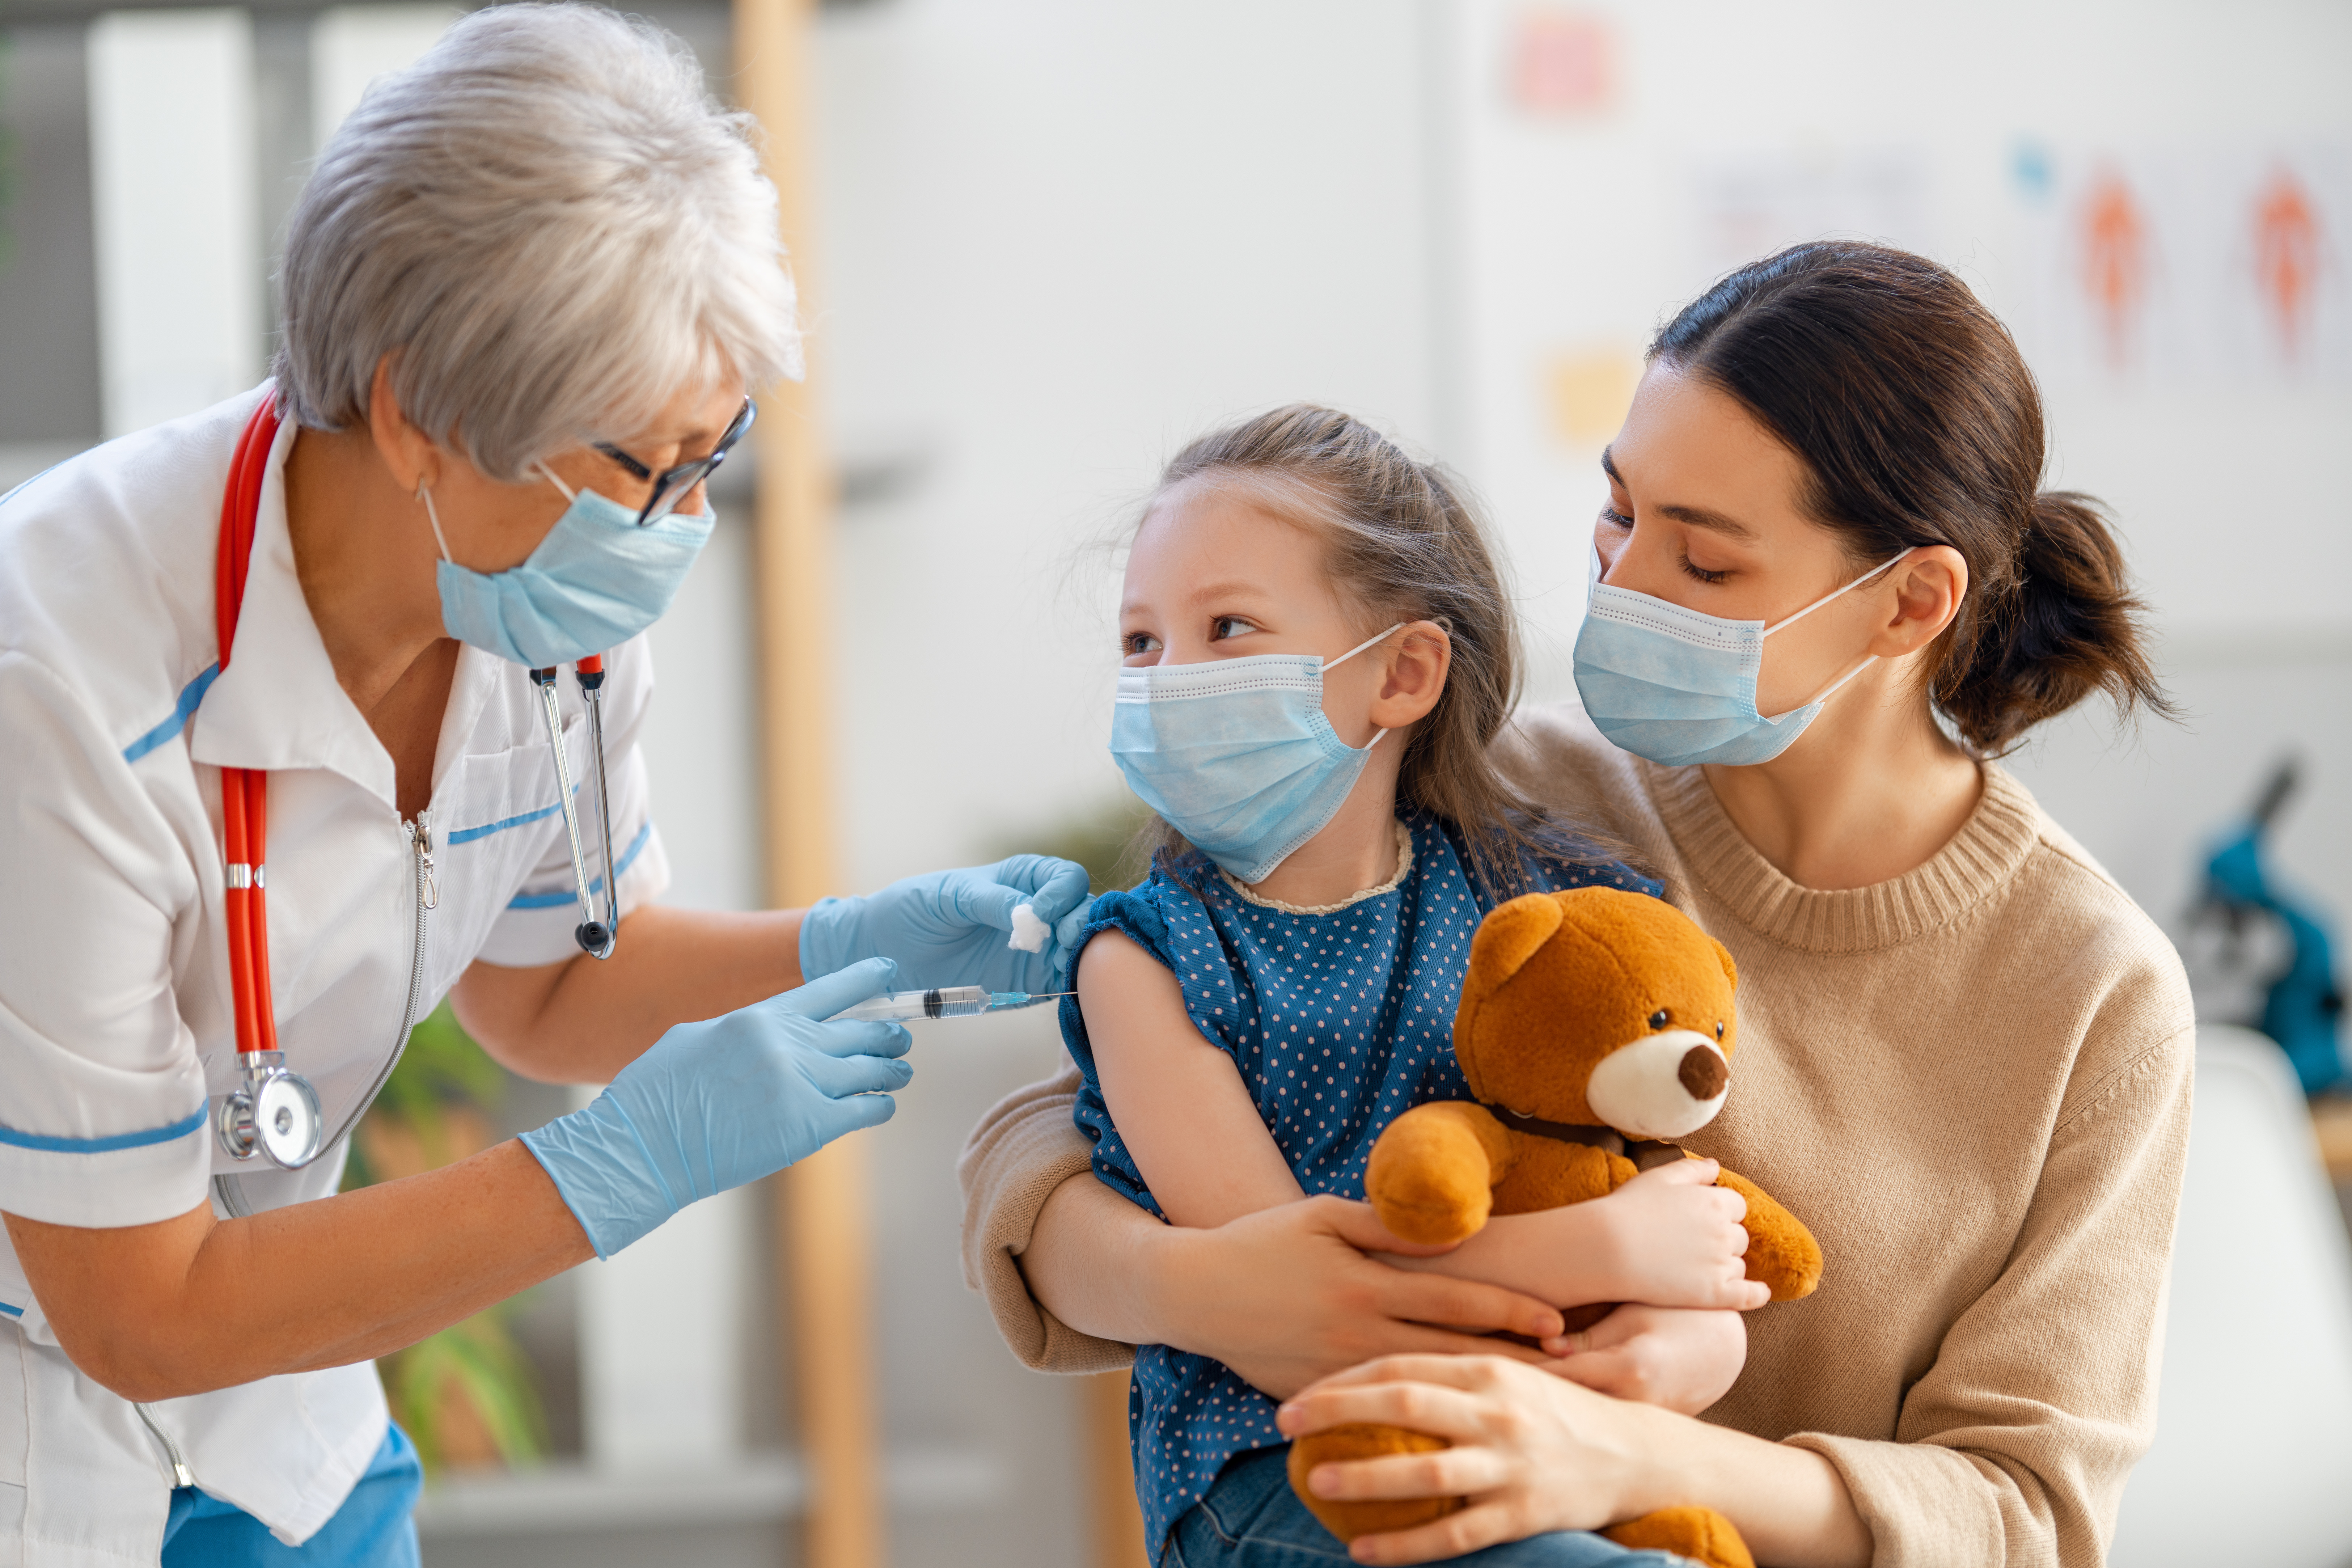 C’est l’une des conditions d’une couverture vaccinale suffisante : réduire la peur de l’aiguille et de la piqûre chez les enfants (Visuel Adobe Stock 404794325)